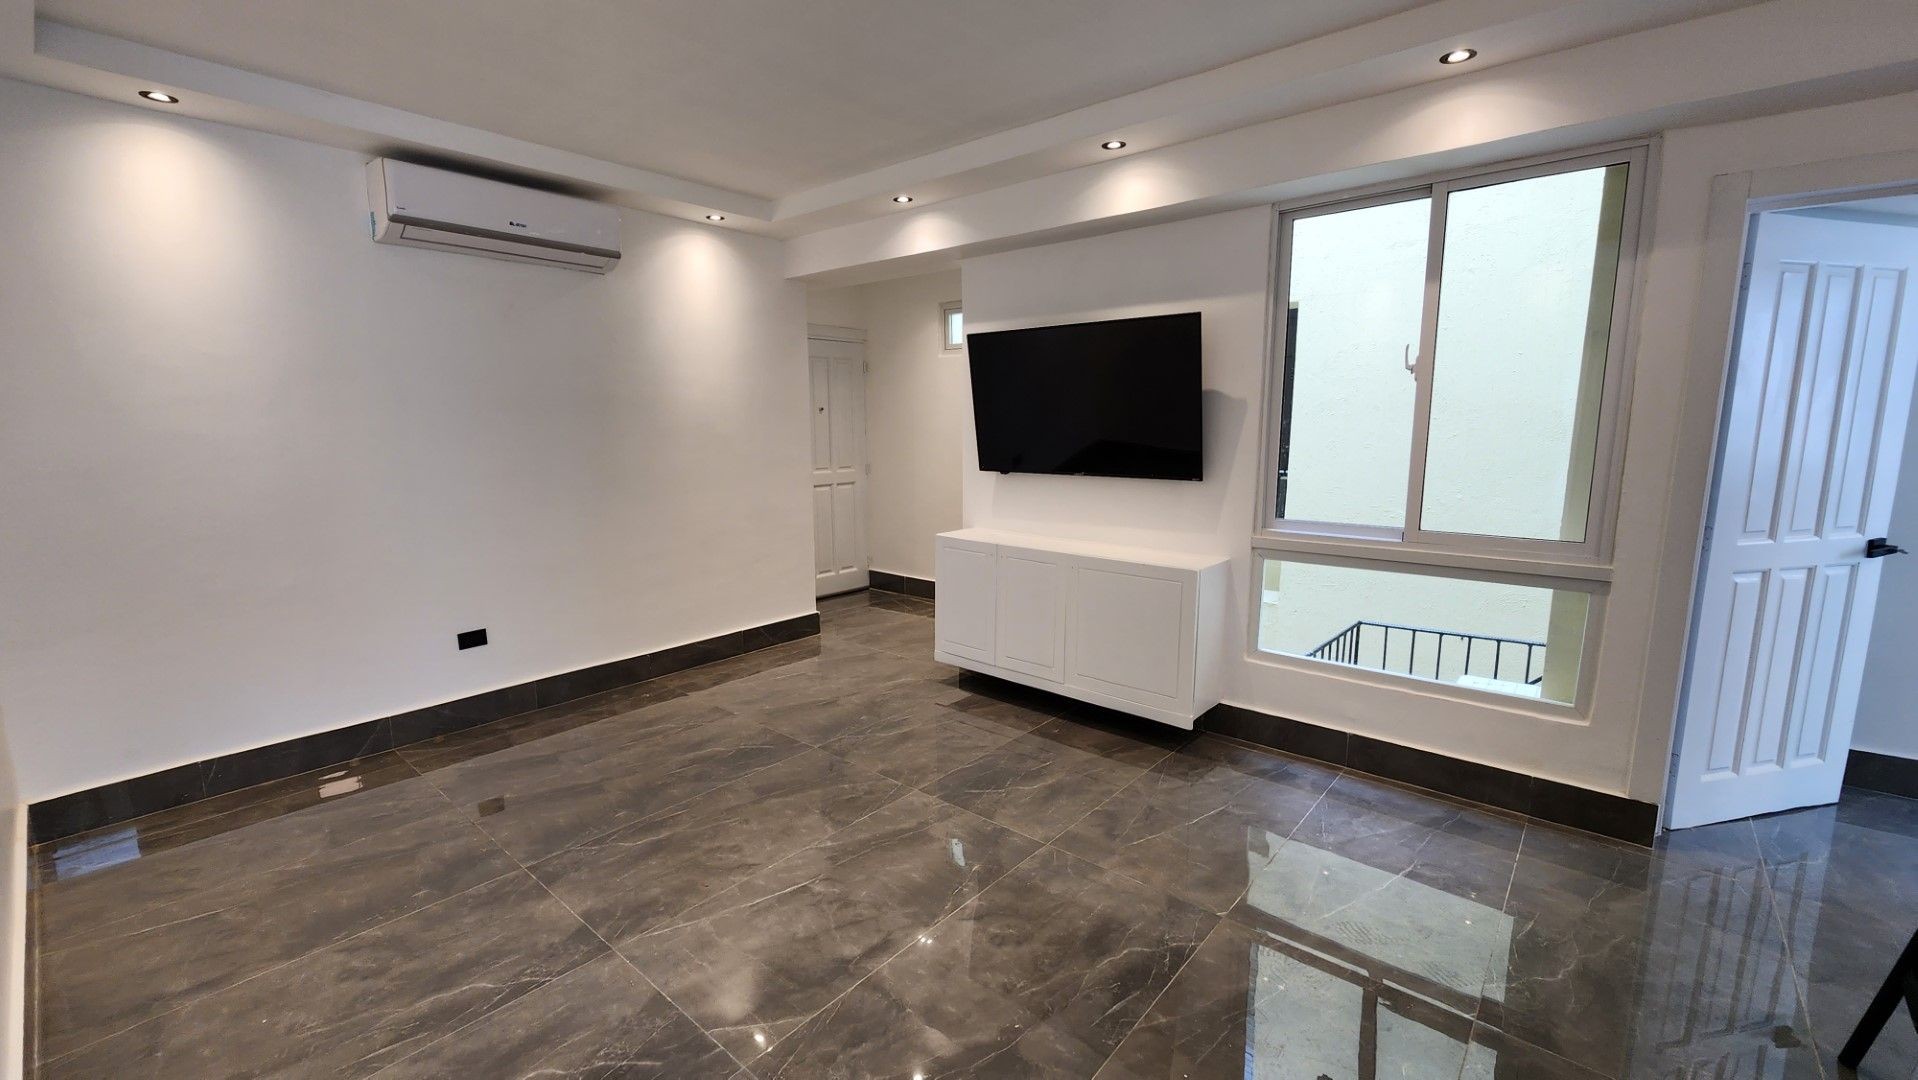 apartamentos - Apartamento en alquiler con linea blanca en Piantini, distrito nacional  1